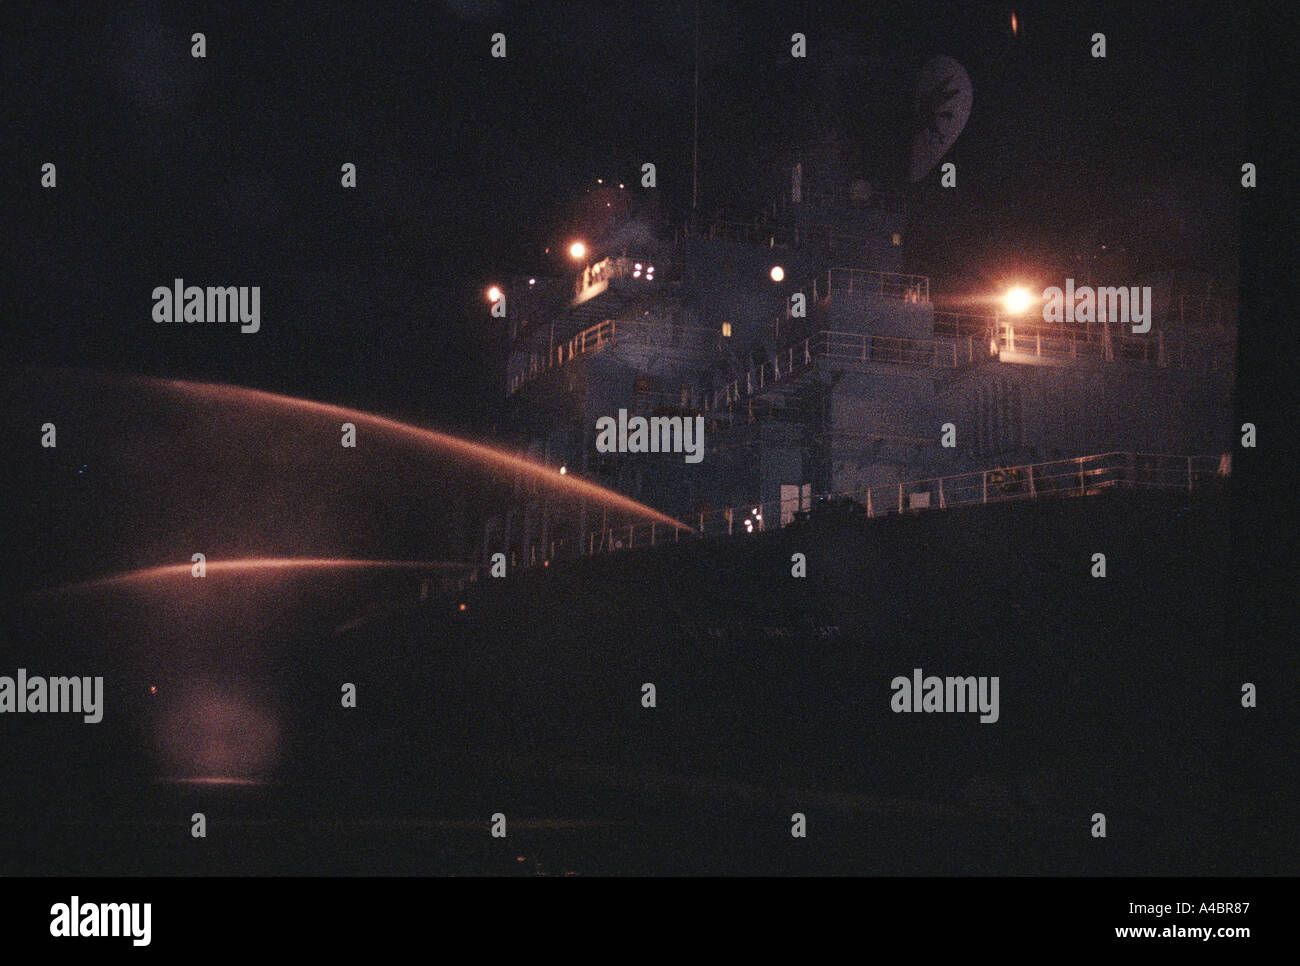 Ein Schiff segelt durch die Singapur Straits Spritzen Meerwasser aus Schläuchen aus dem Heck - eines der wenigen rechtlichen Abwehrmaßnahmen Stockfoto